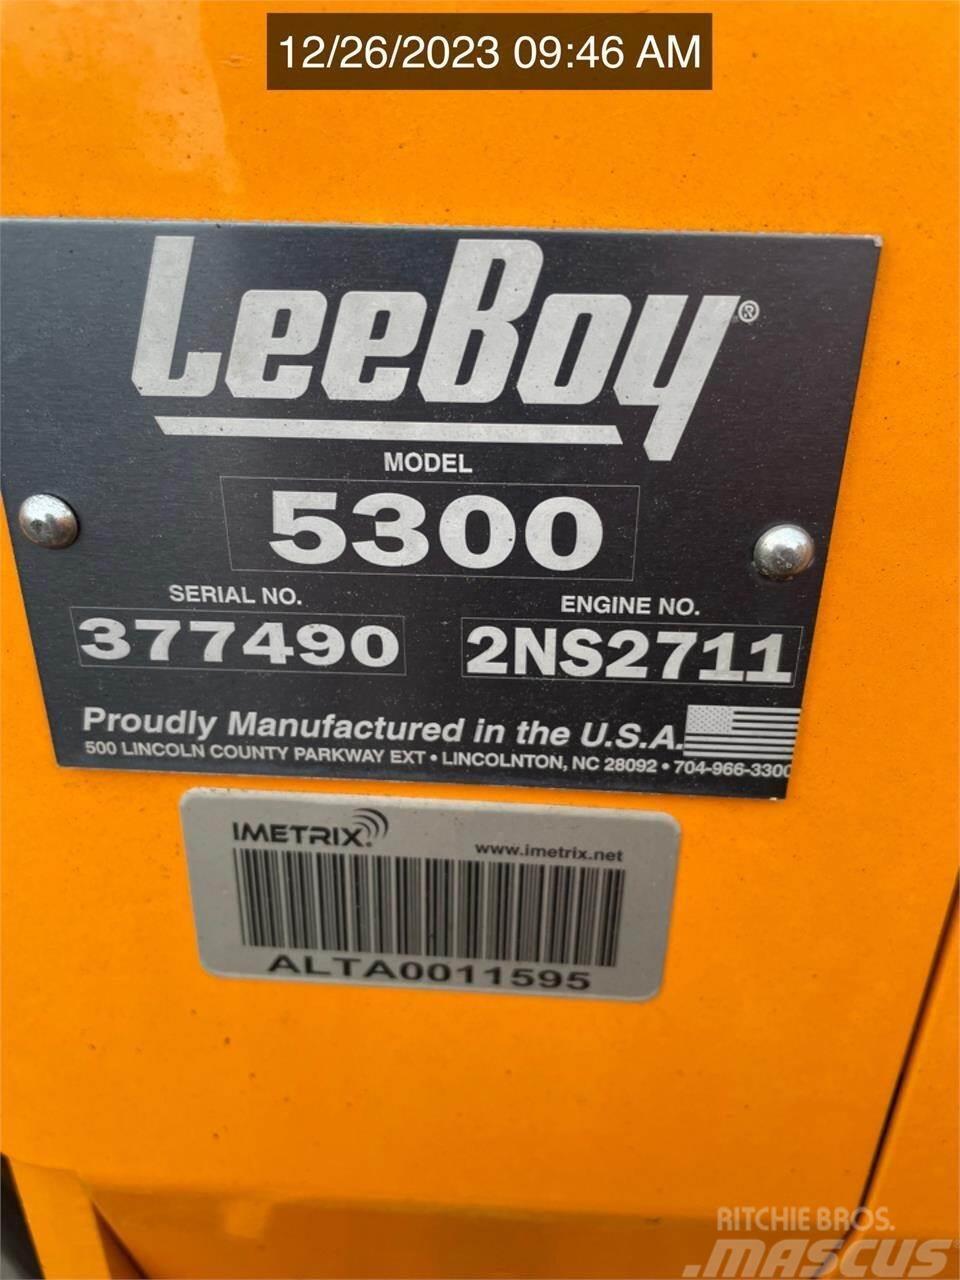 LeeBoy 5300 Asfaltudlæggere